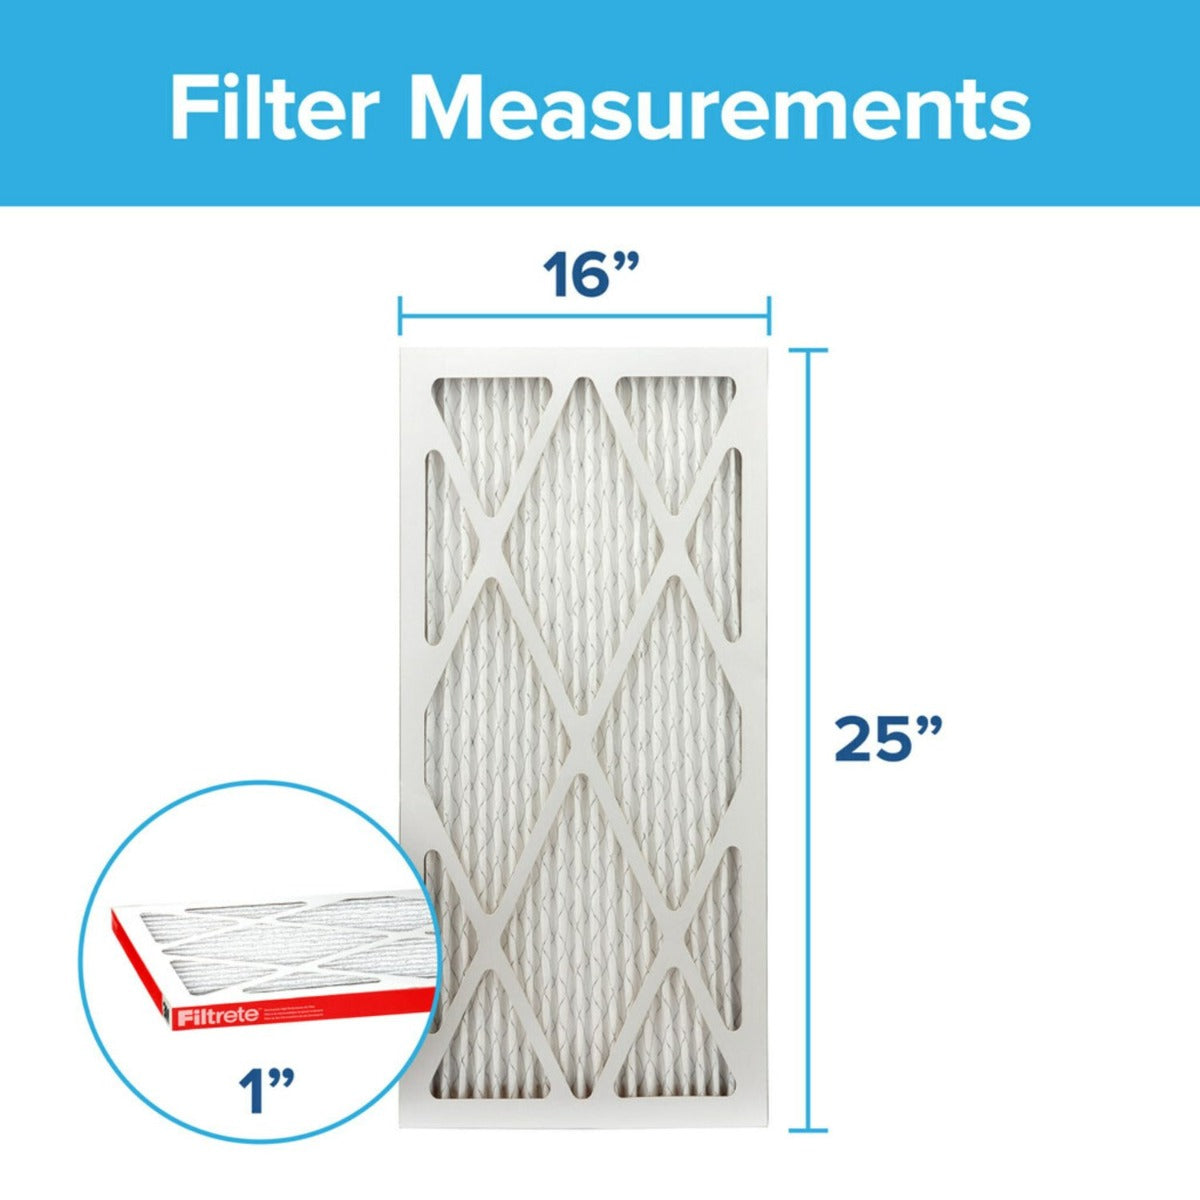 3M Filtrete 1000 Micro Allergen & Dust Defense Filter - 16x25x1 (4-Pack)